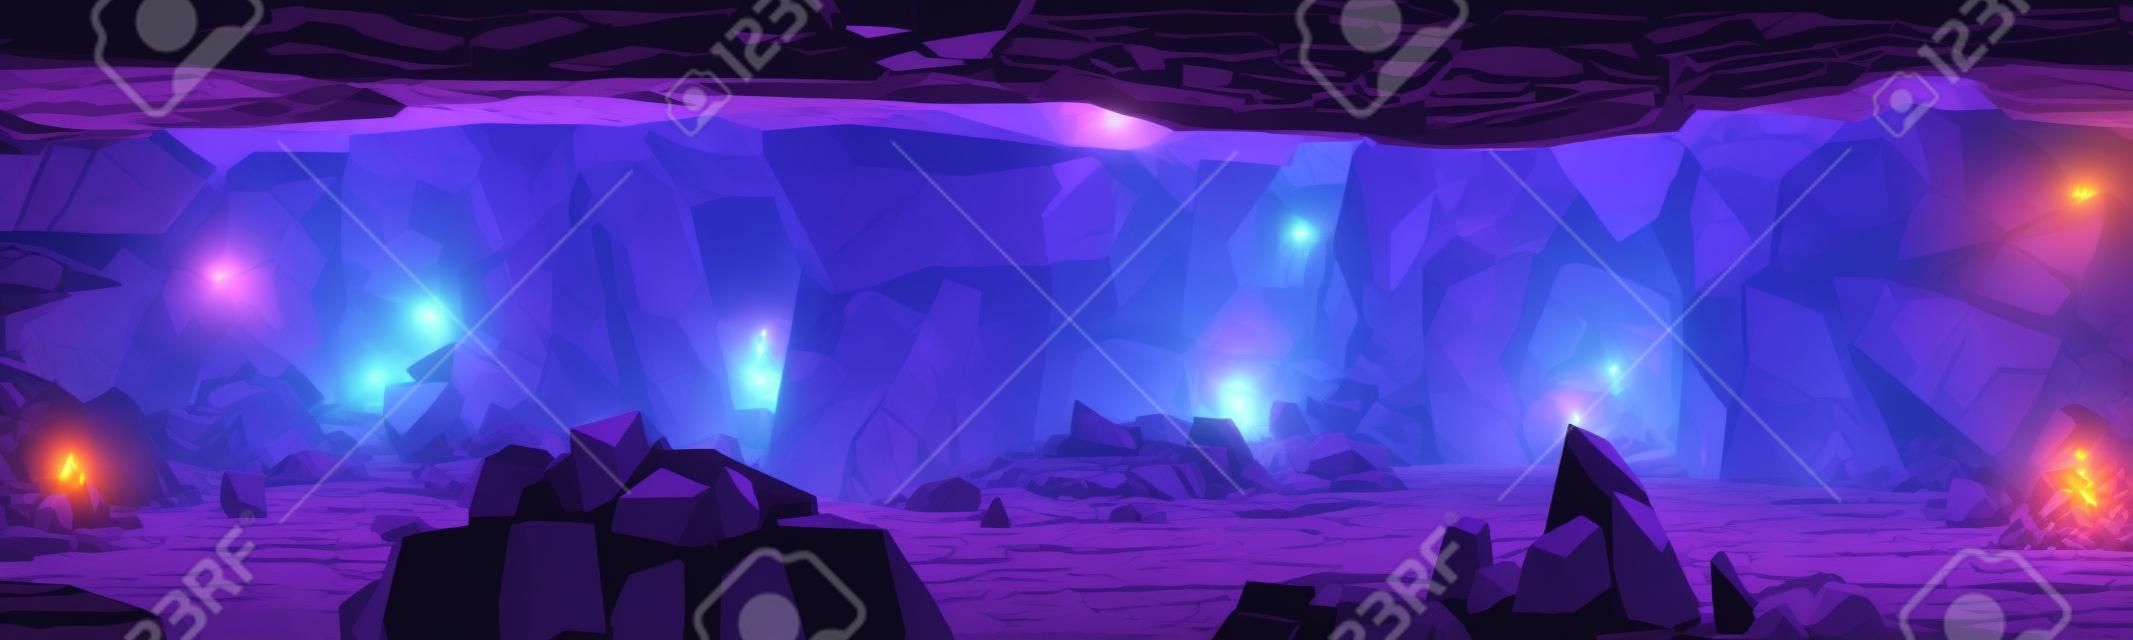 アメジスト鉱山トンネル内図。輝く神秘的な洞窟、岩と石のシャフトの壁に紫色の光沢のあるクリスタルを持つ採石場の風景。漫画ゲームの視差背景、2Dベクターイラスト